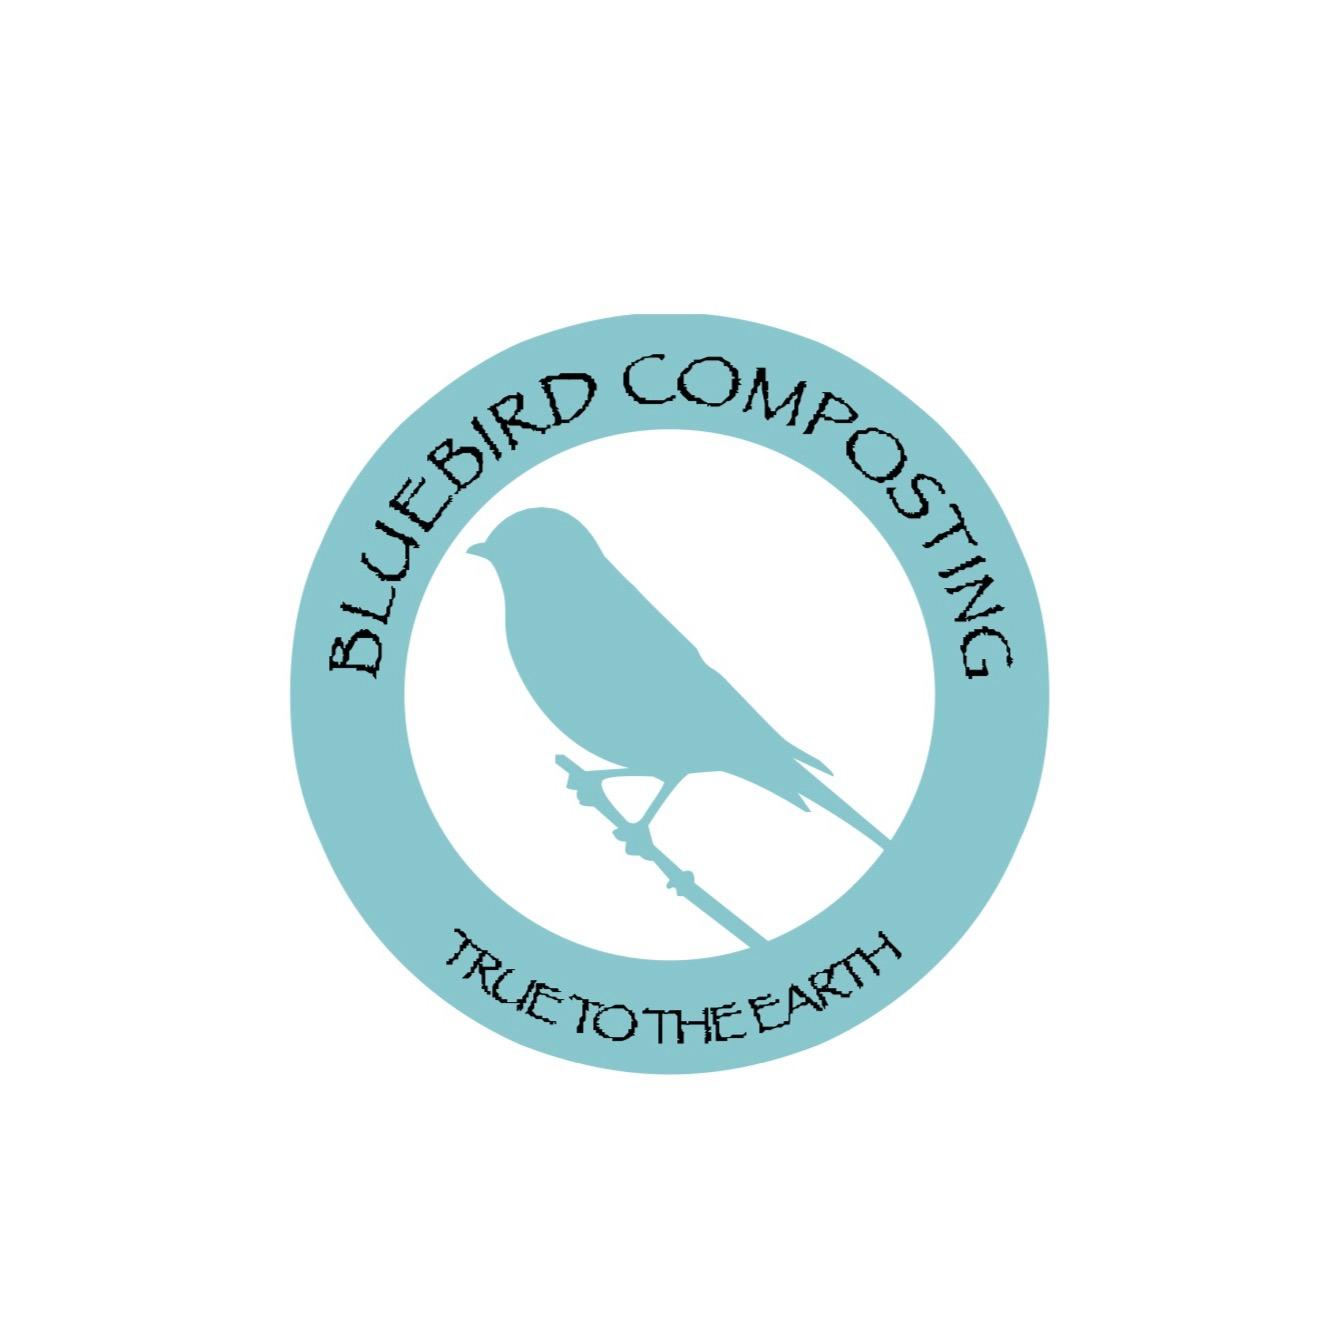 Bluebird Composting - Columbia, MO 65202 - (573)550-7323 | ShowMeLocal.com